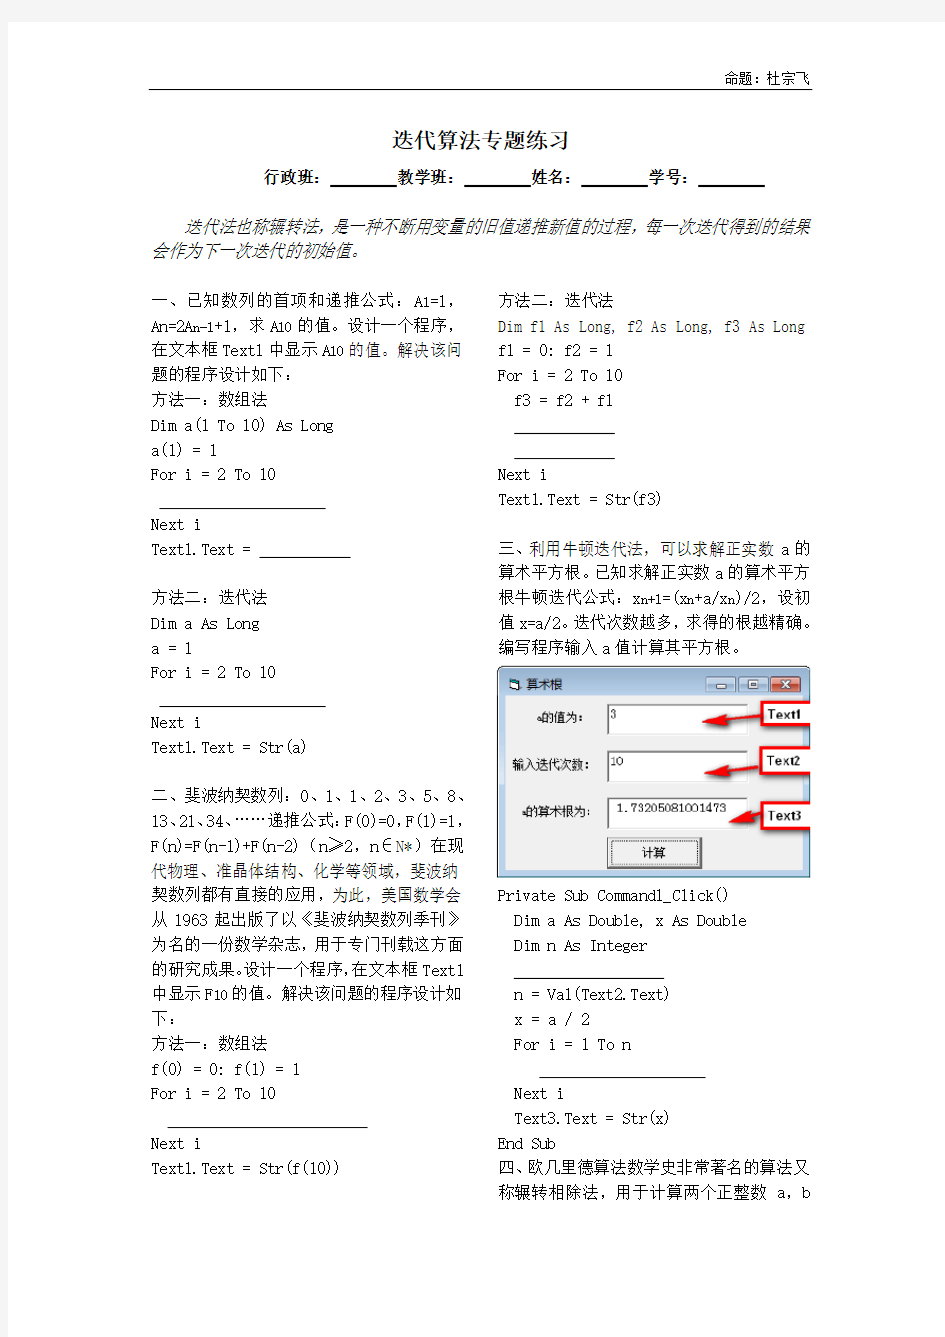 浙江高中信息技术选考加试题迭代算法